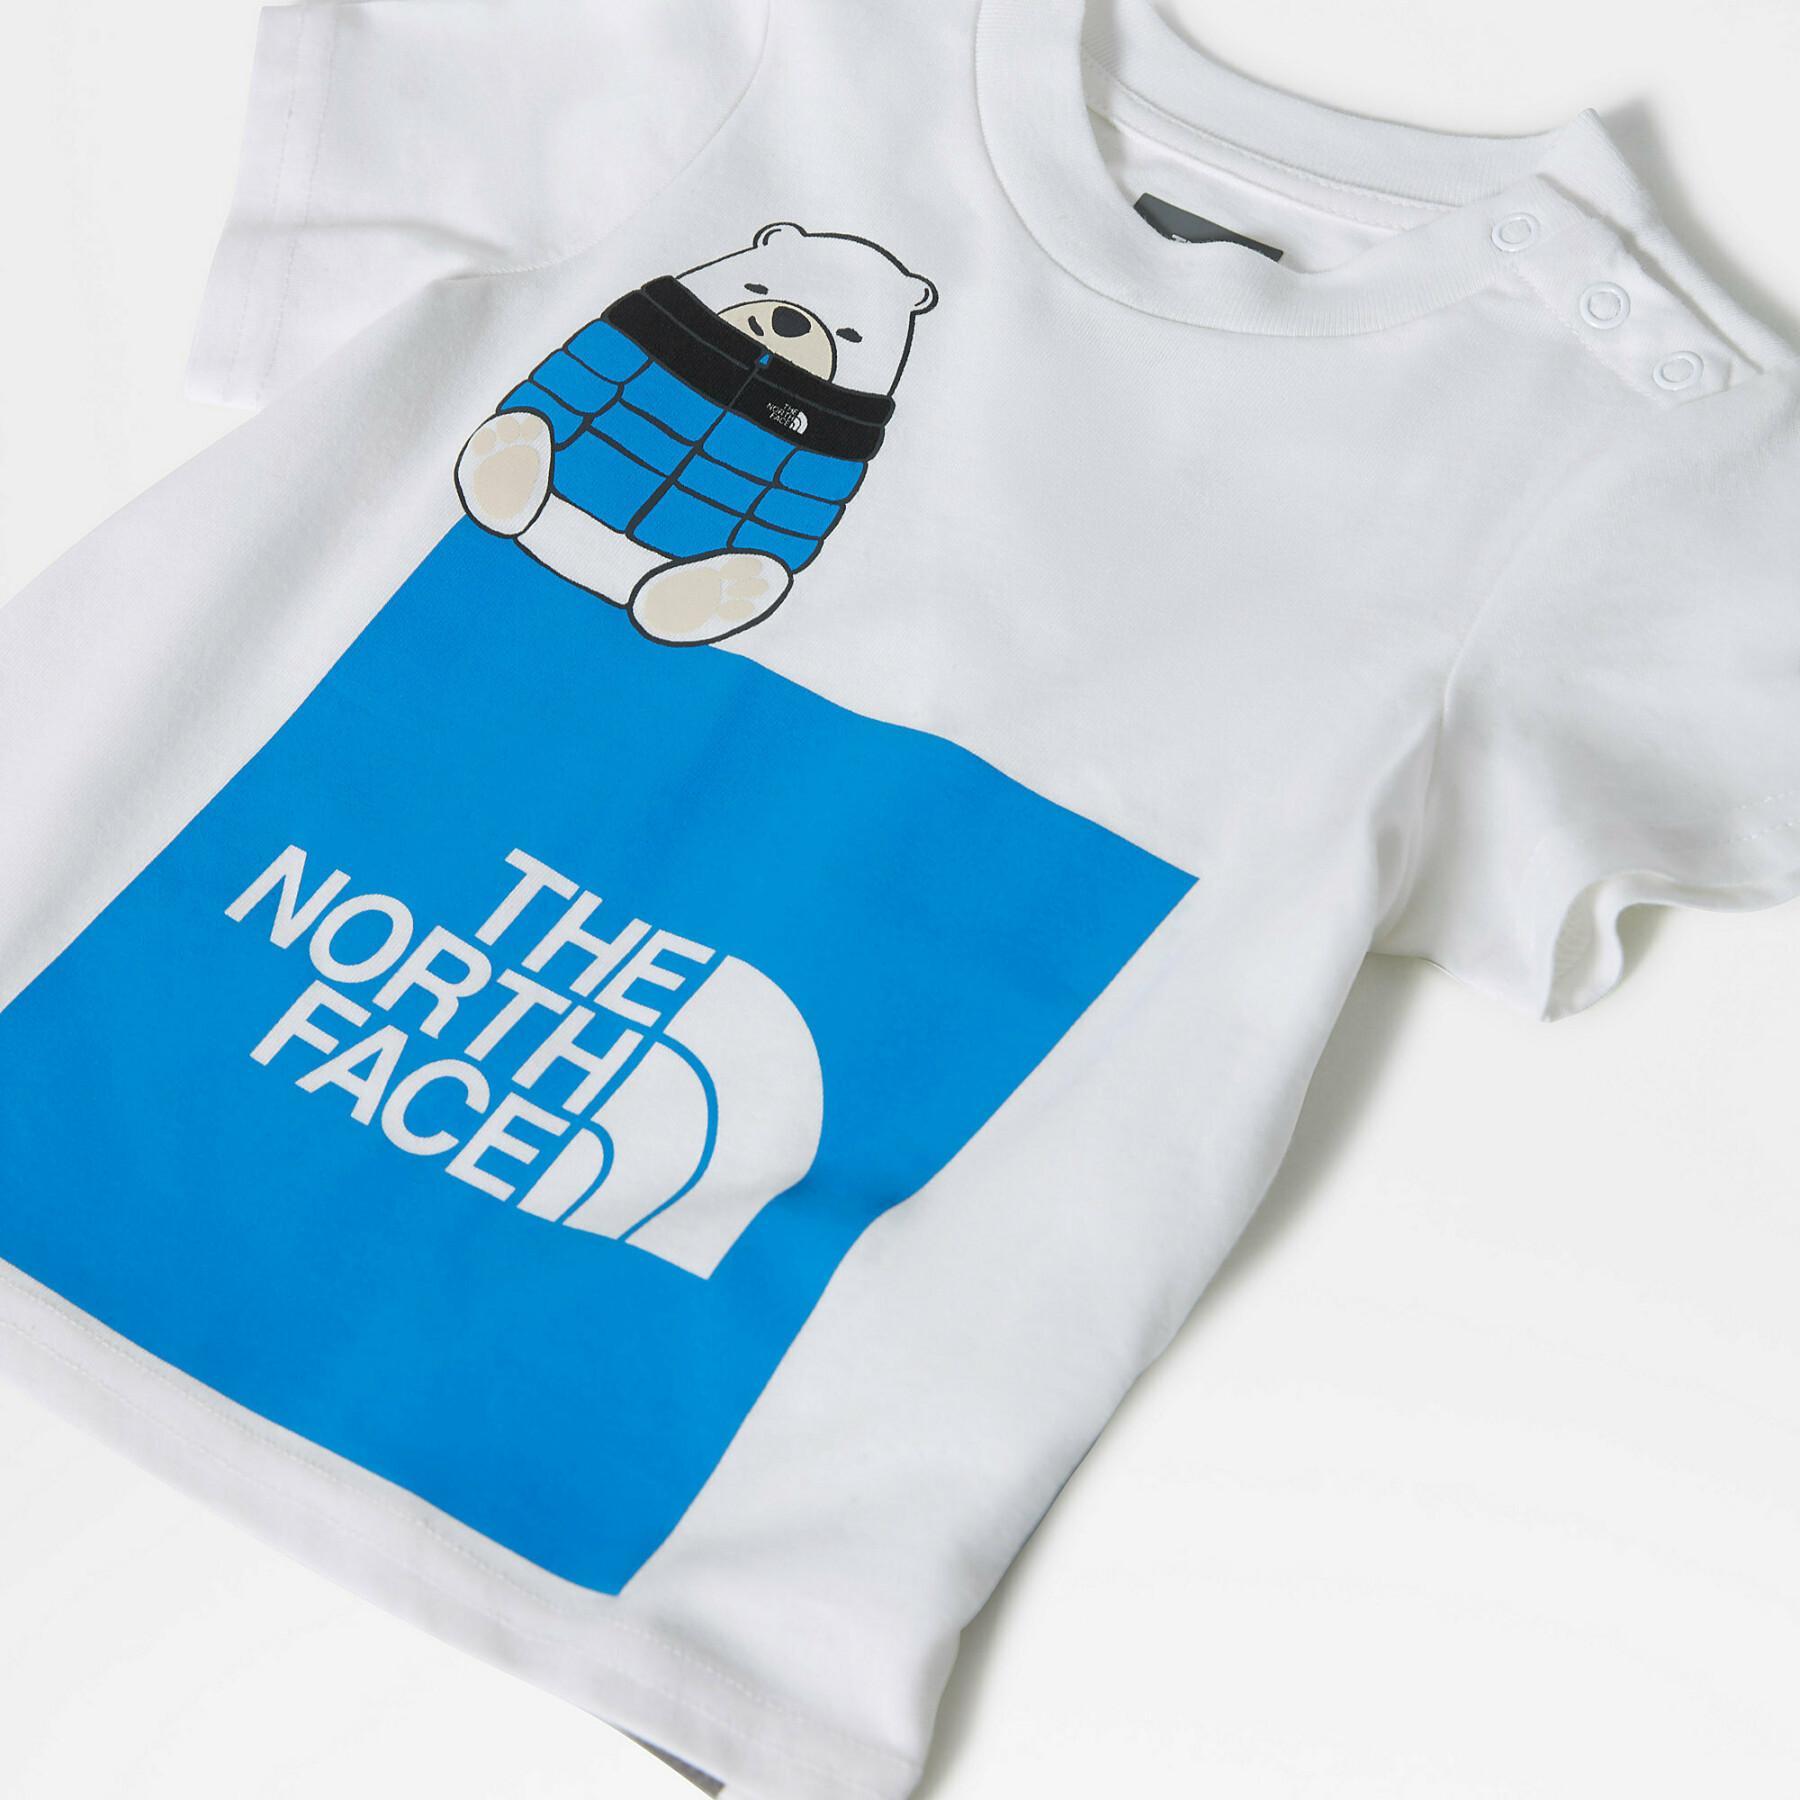 Camiseta de bebé The North Face Easy